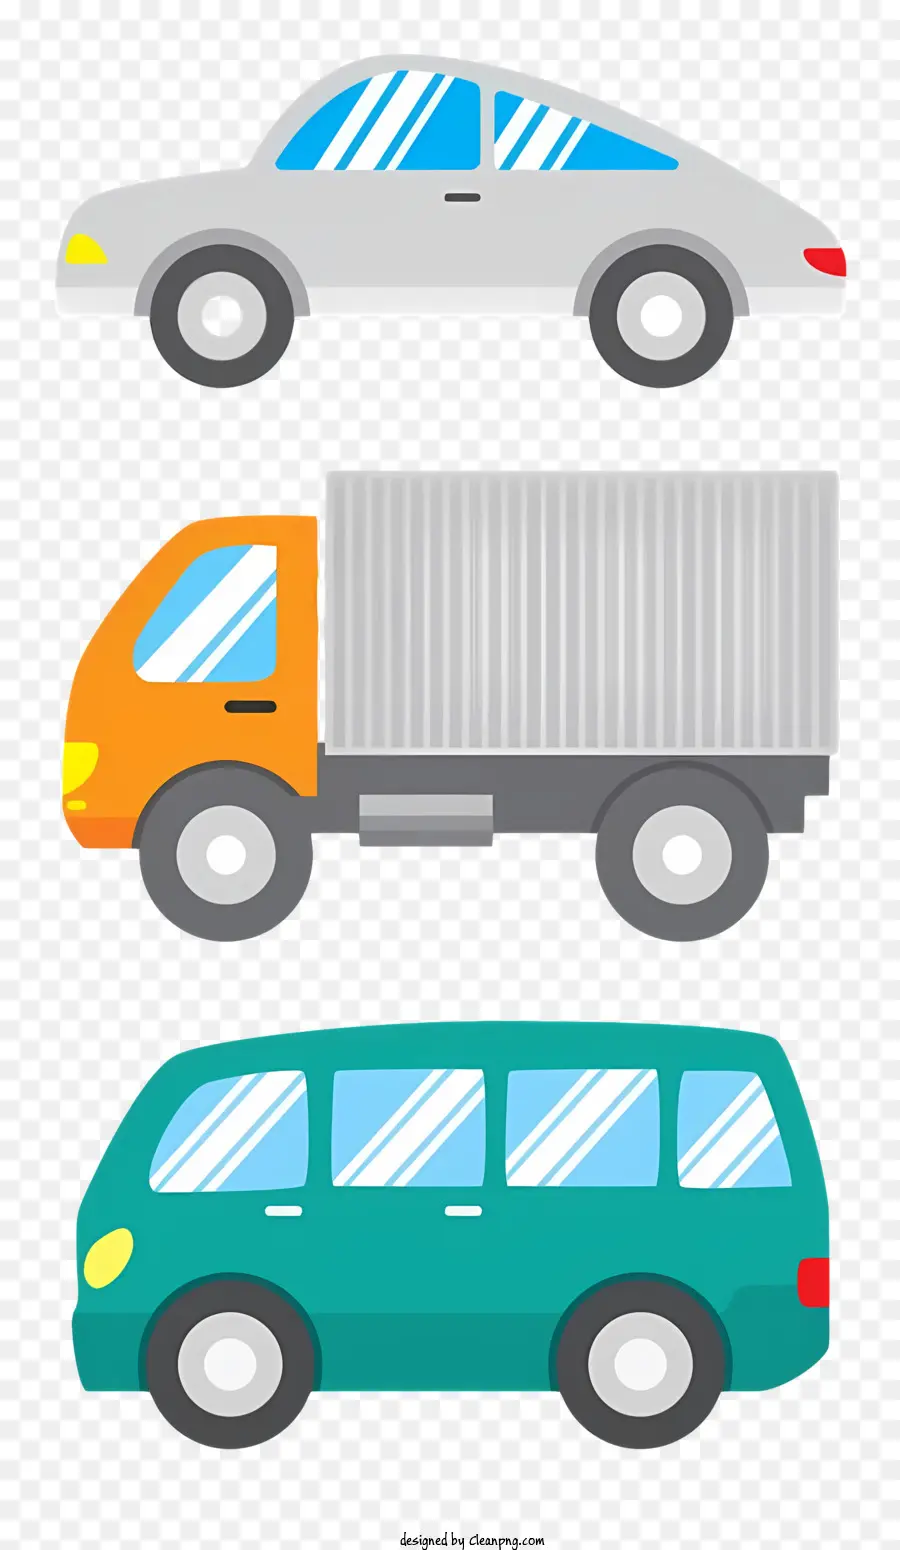 trái cam - Ba chiếc xe, bao gồm một chiếc xe tải, đậu trên bề mặt tối